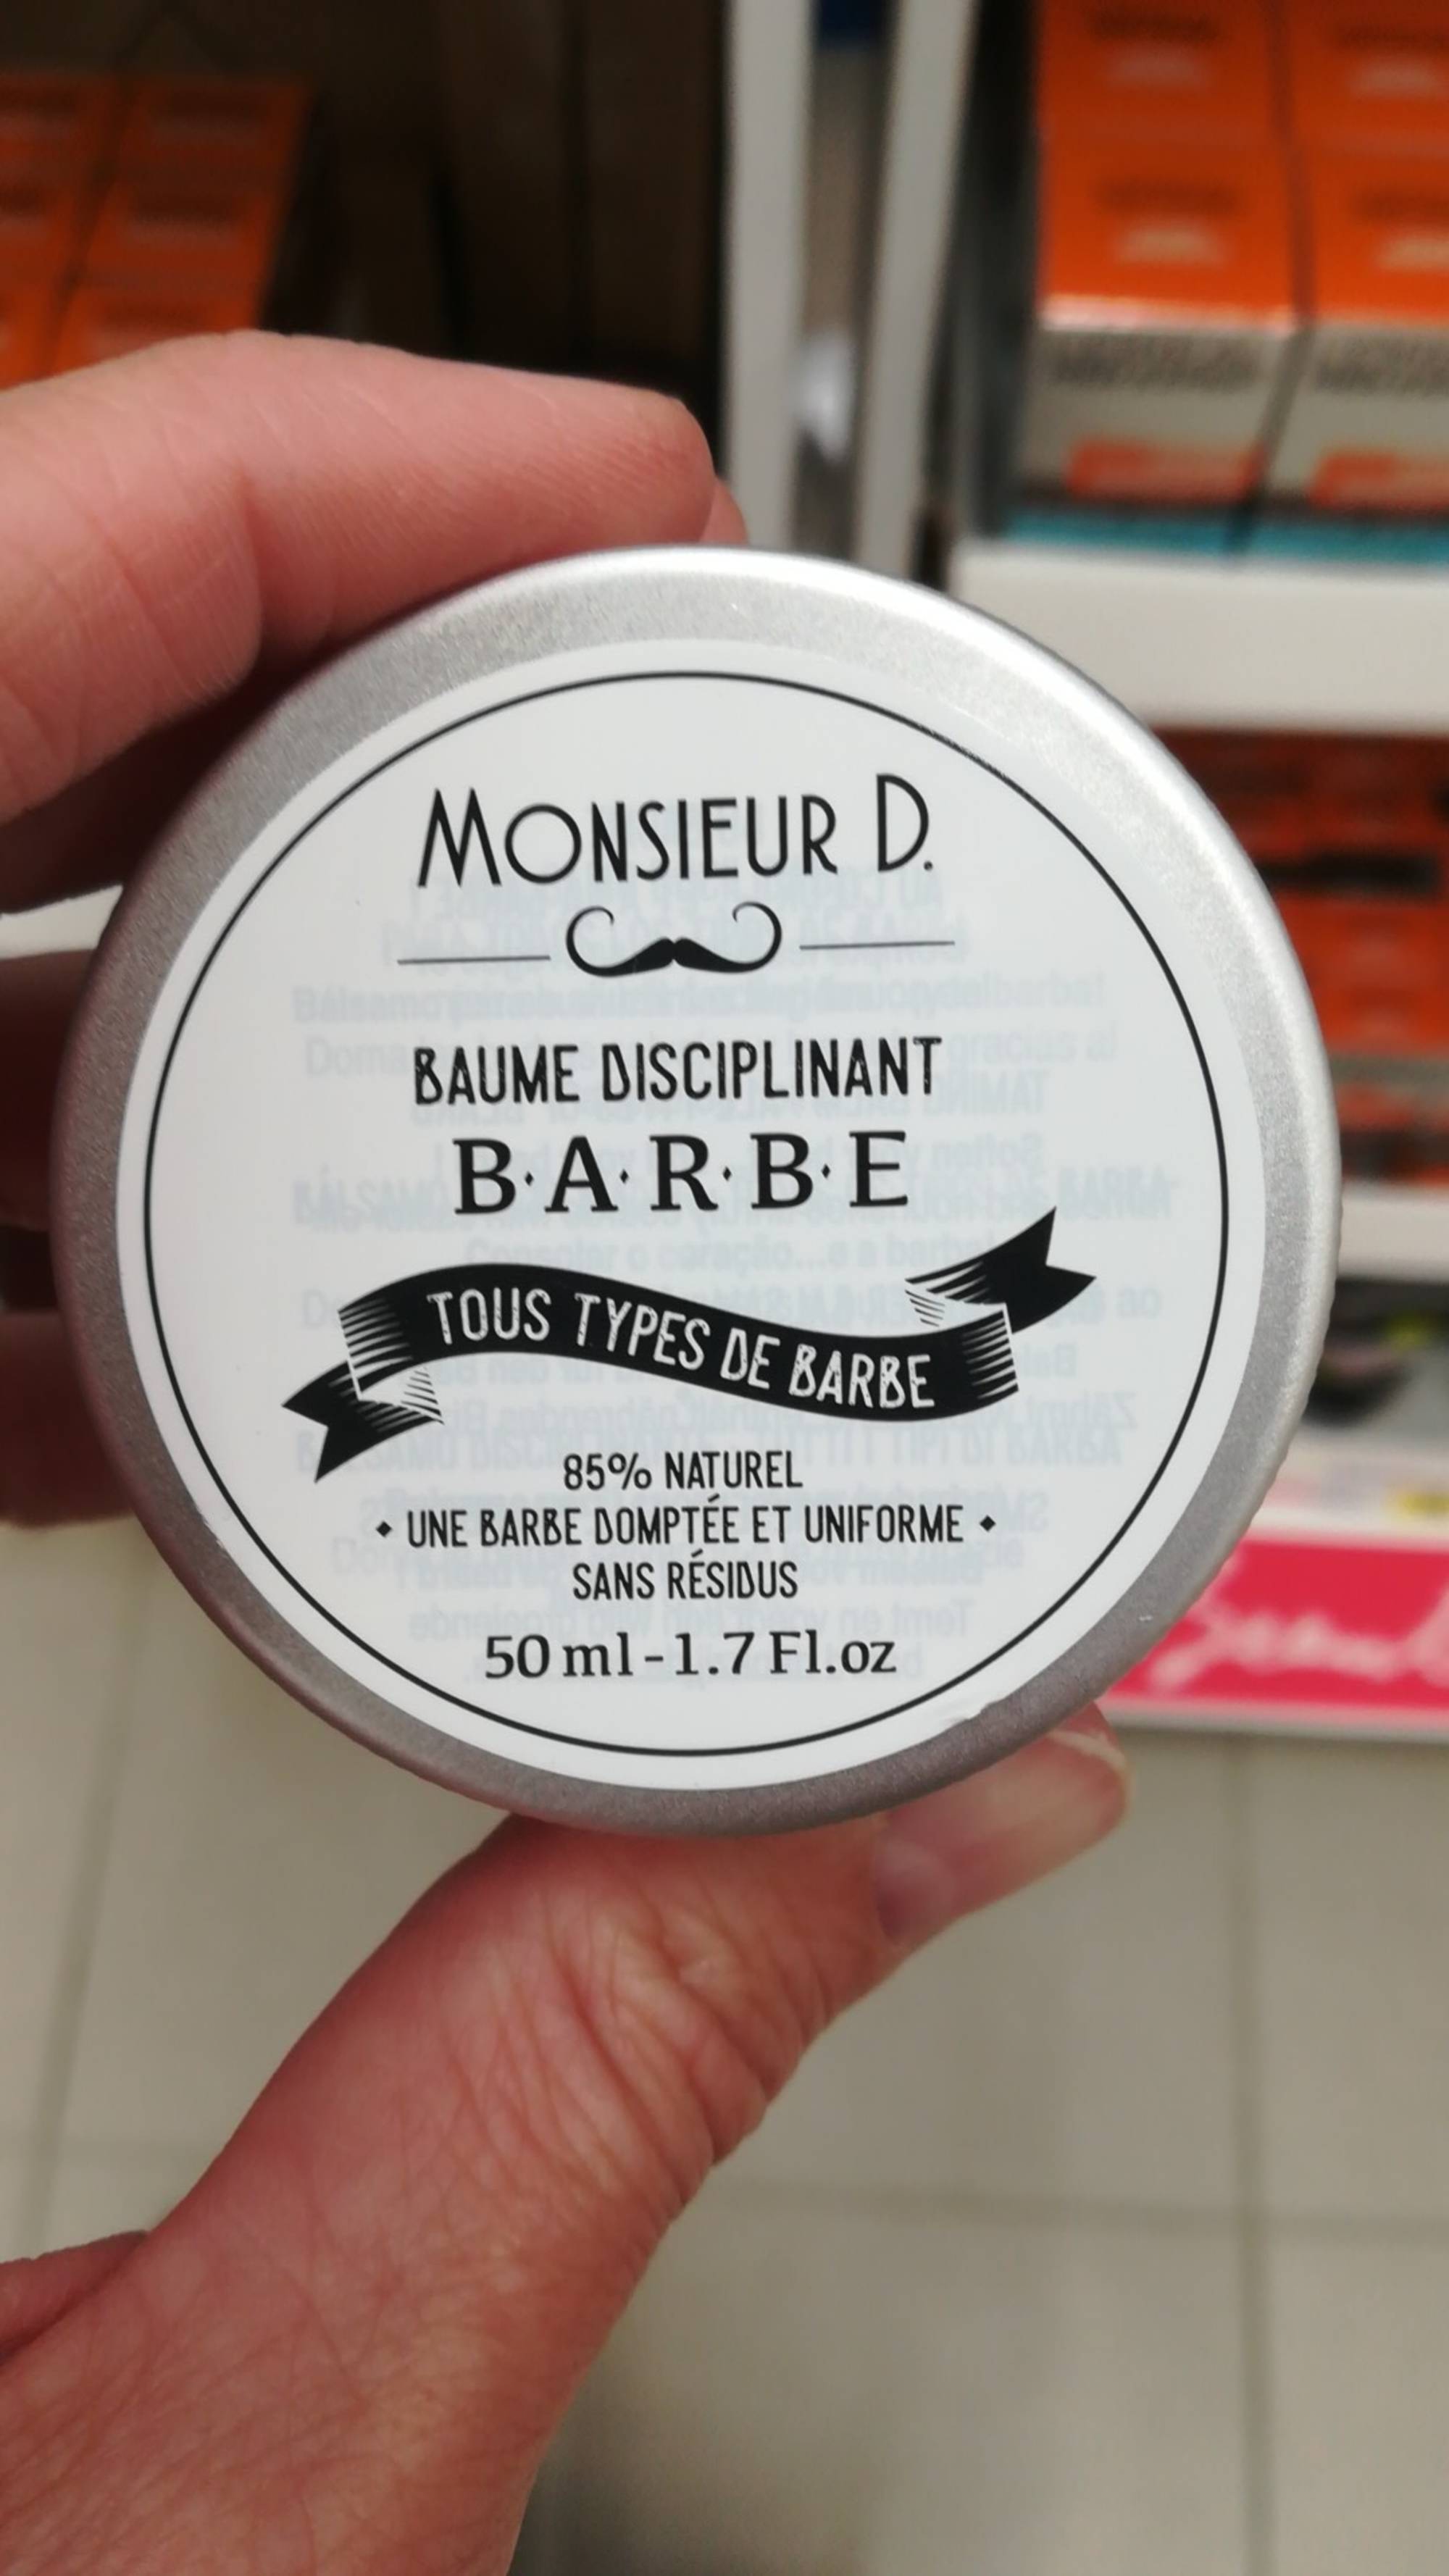 MONSIEUR D. - Baume disciplinant barbe